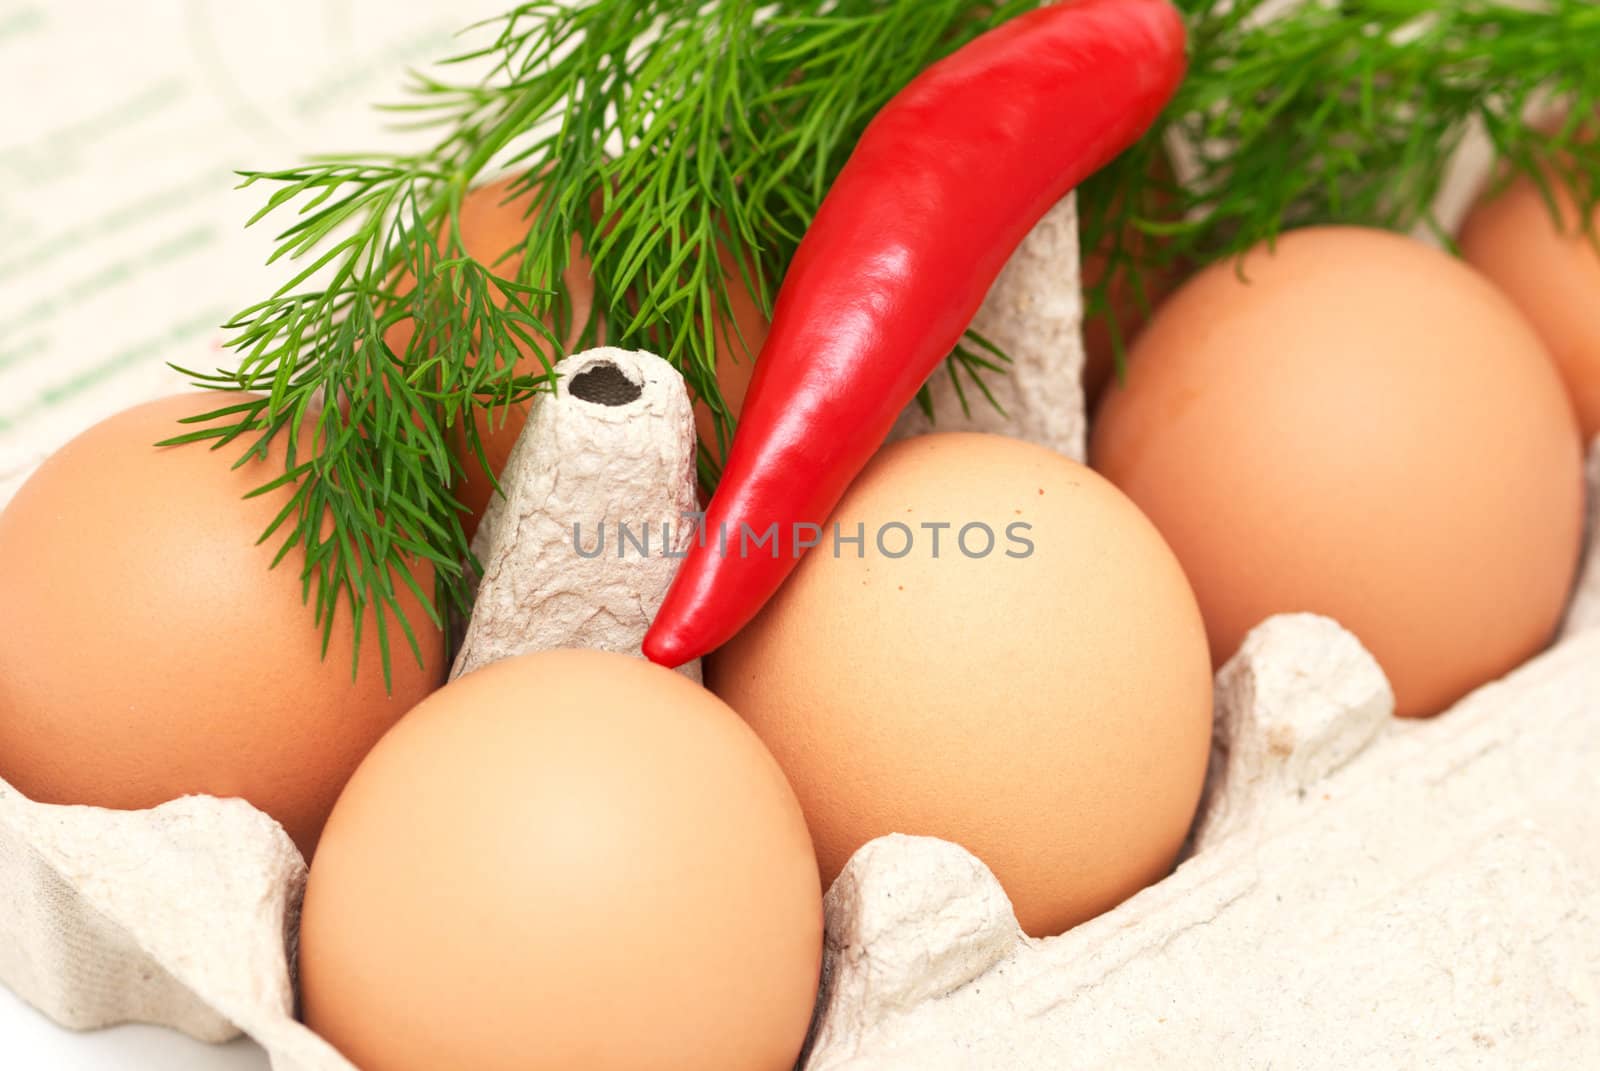 A few eggs wiht chili pepper and dill in a carton 